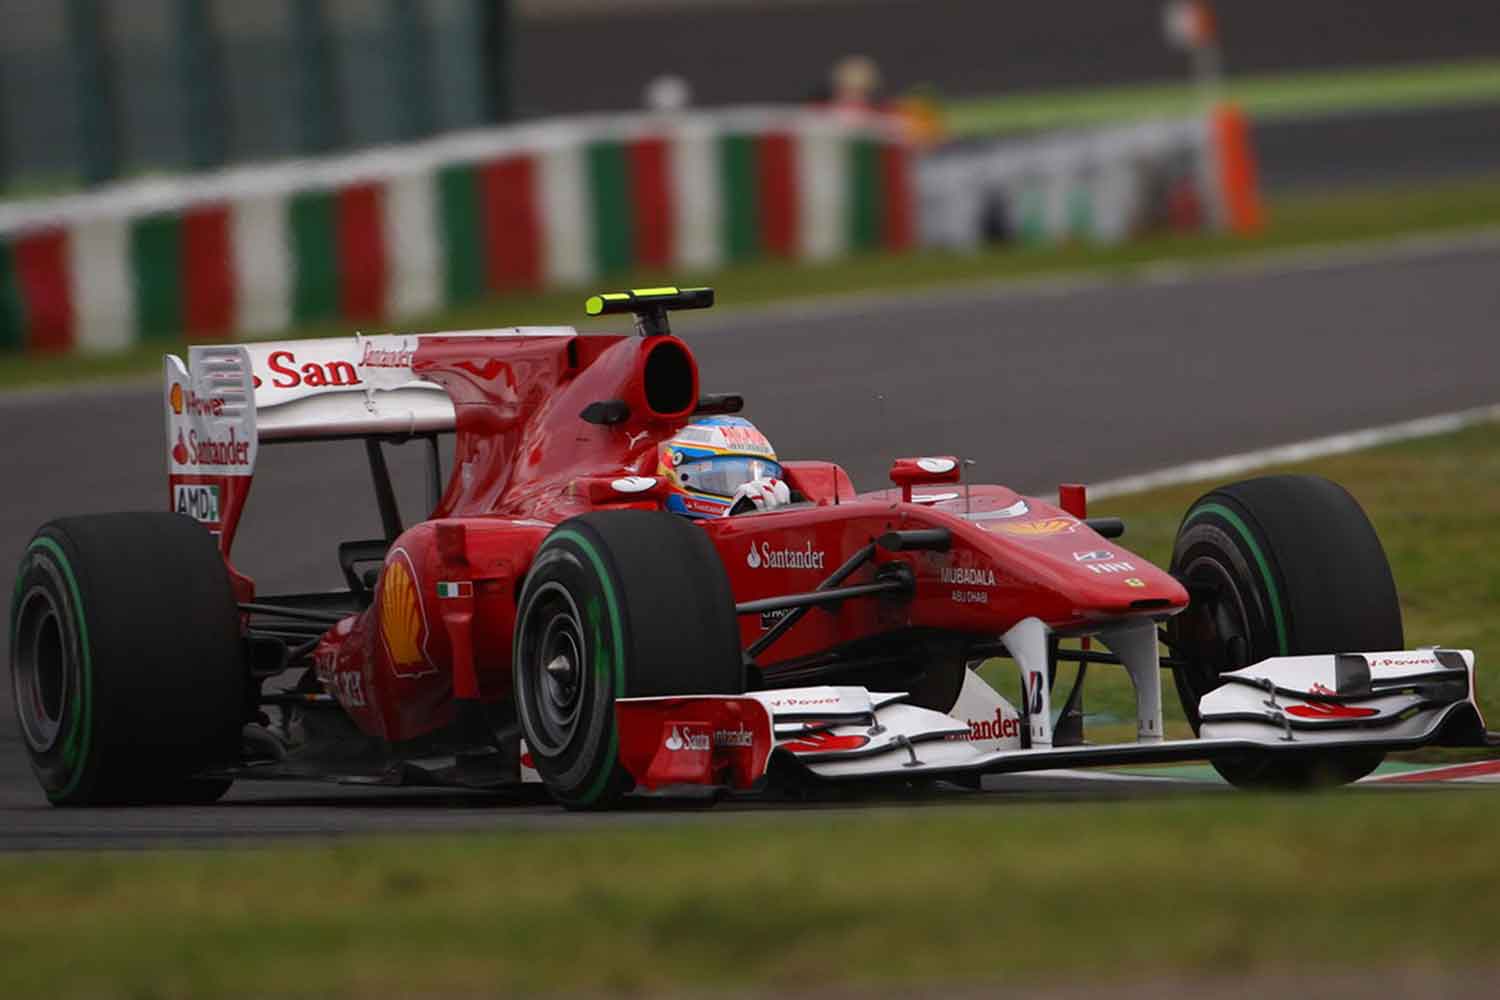 2010年のフェラーリに在籍していたフェルナンンド・アロンソ選手の走行写真